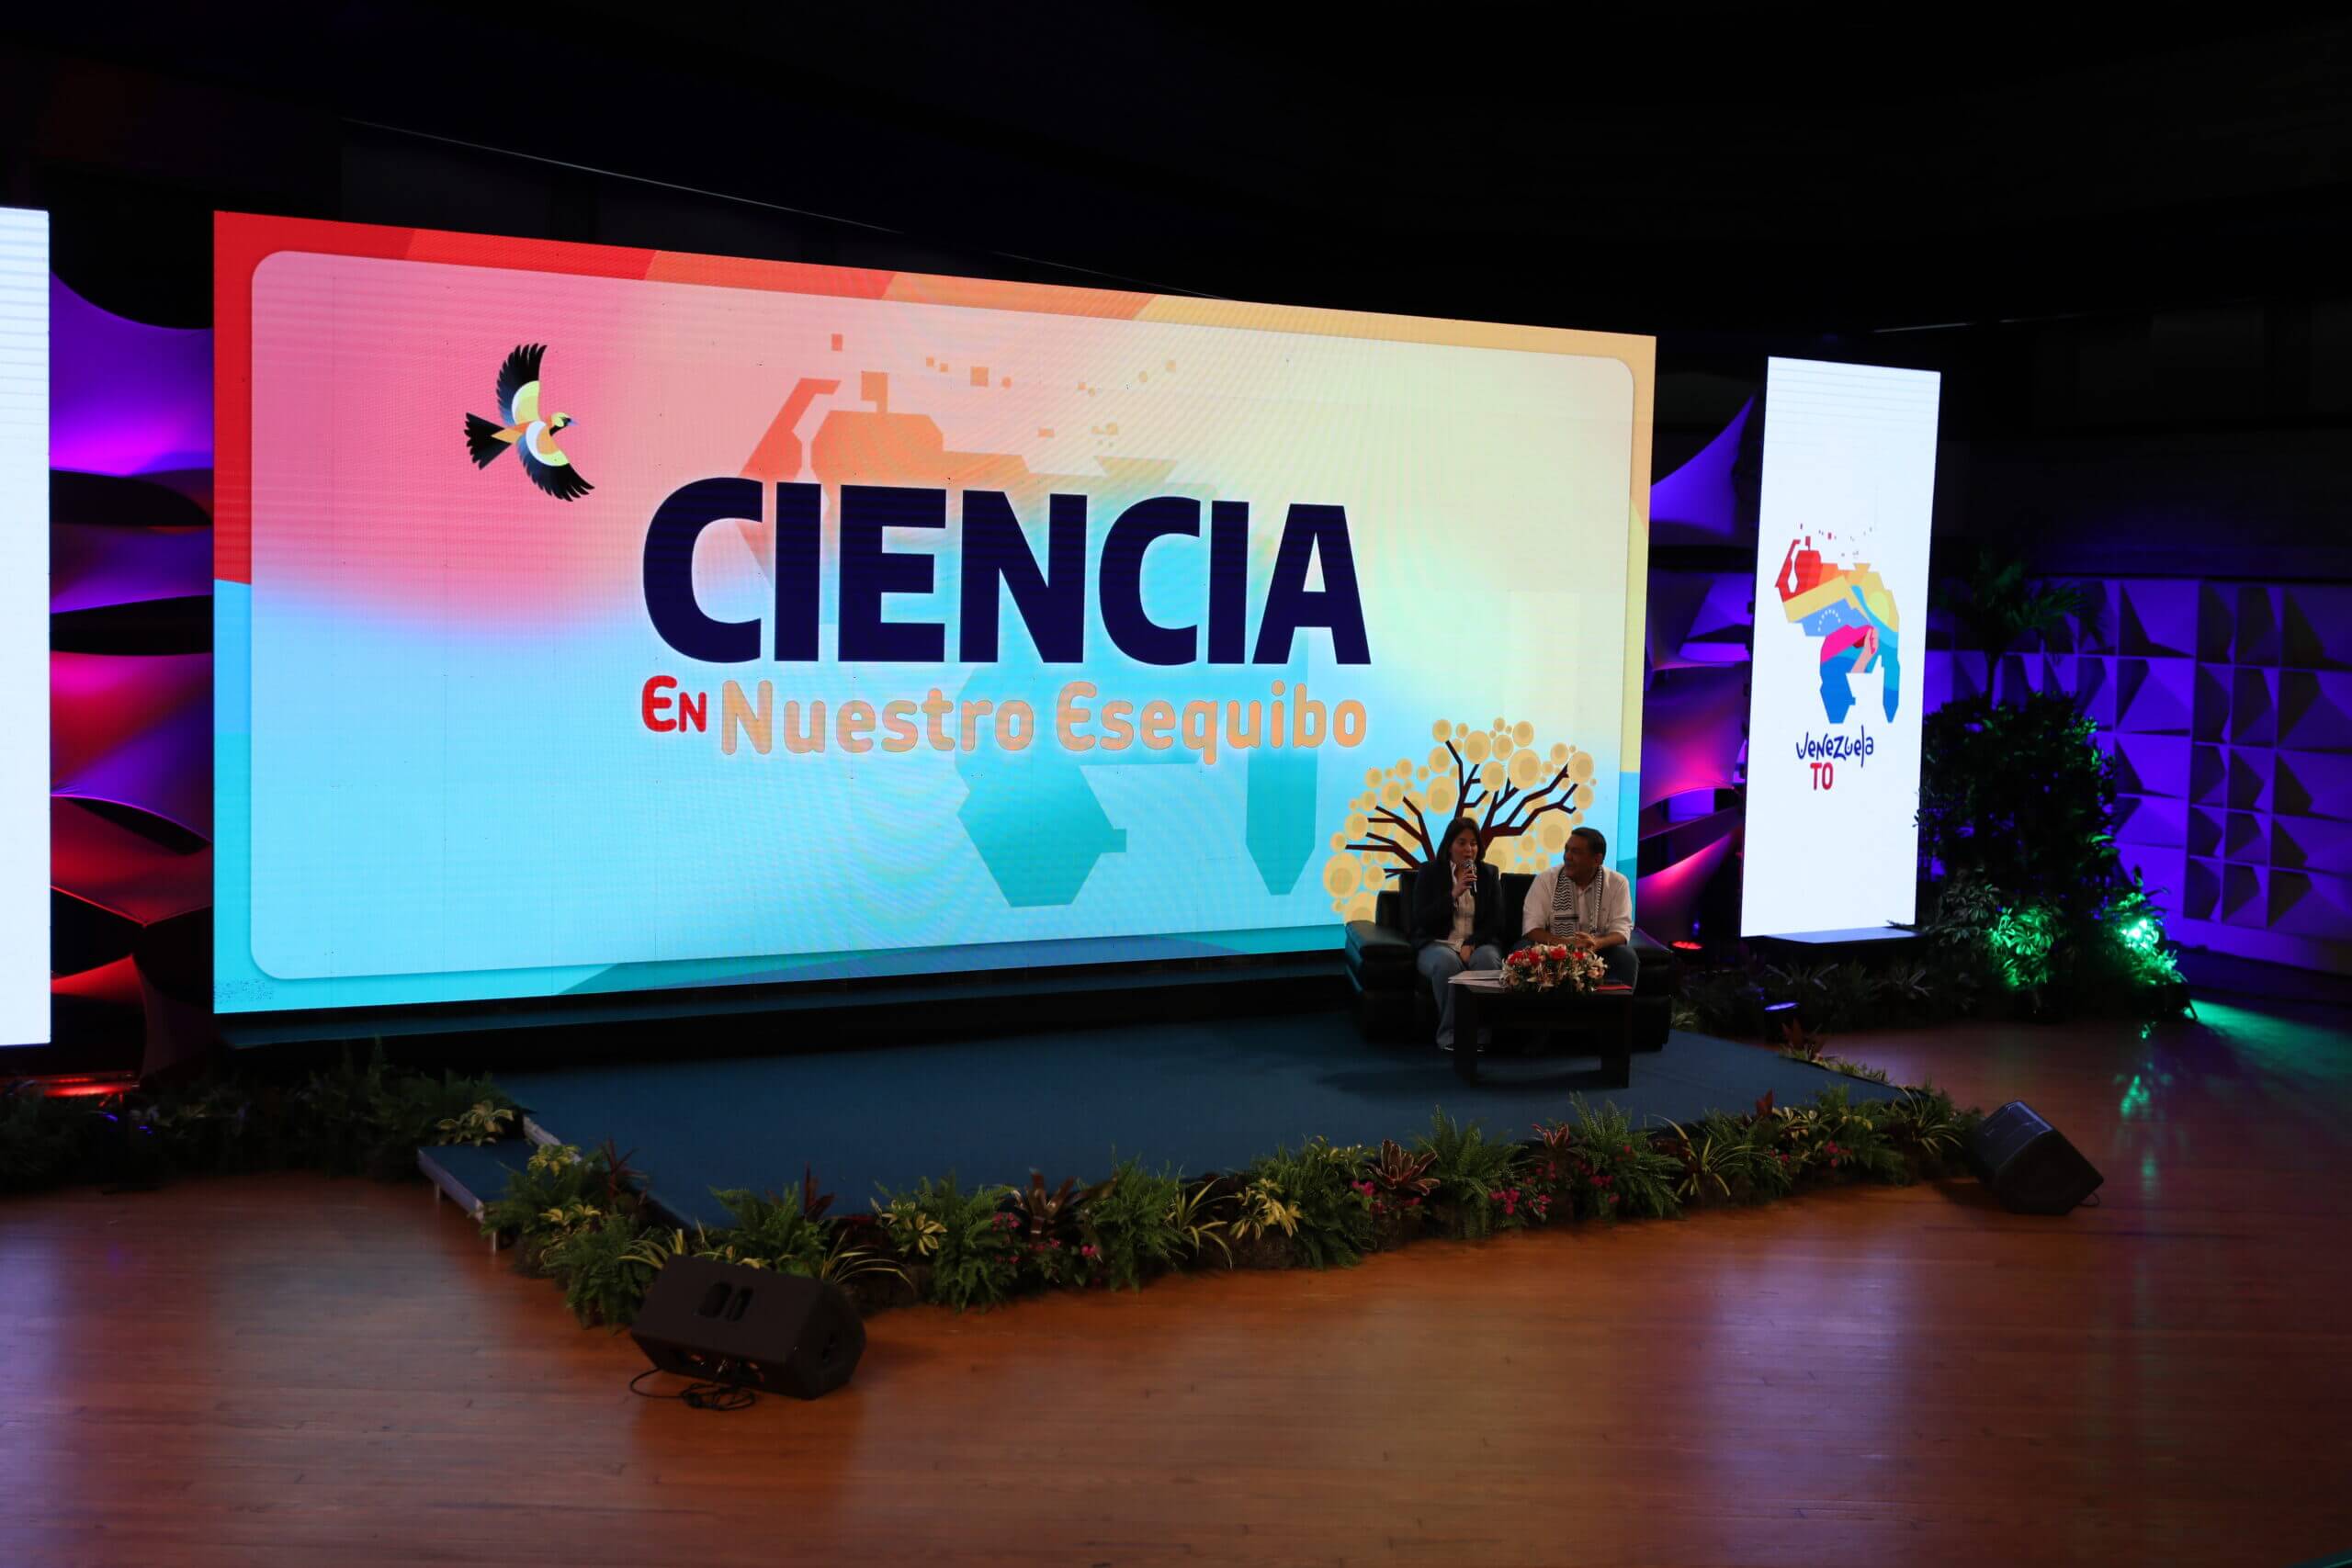 Realizan conferencia “Ciencia en nuestro Esequibo” para promover identidad nacional y defensa del territorio